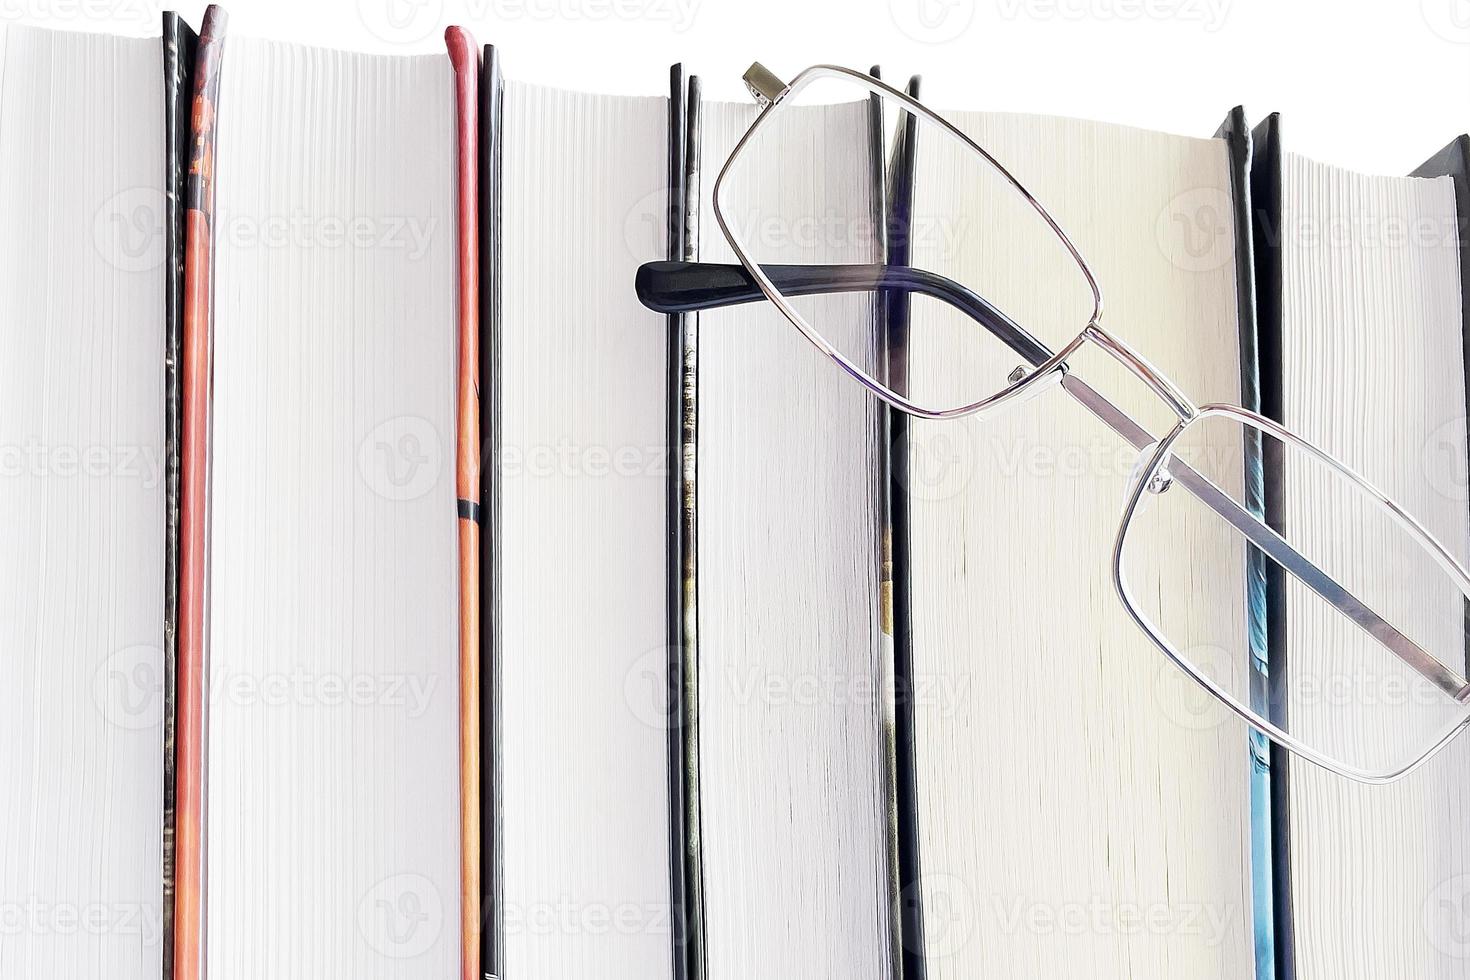 óculos e livros grossos em um fundo branco foto